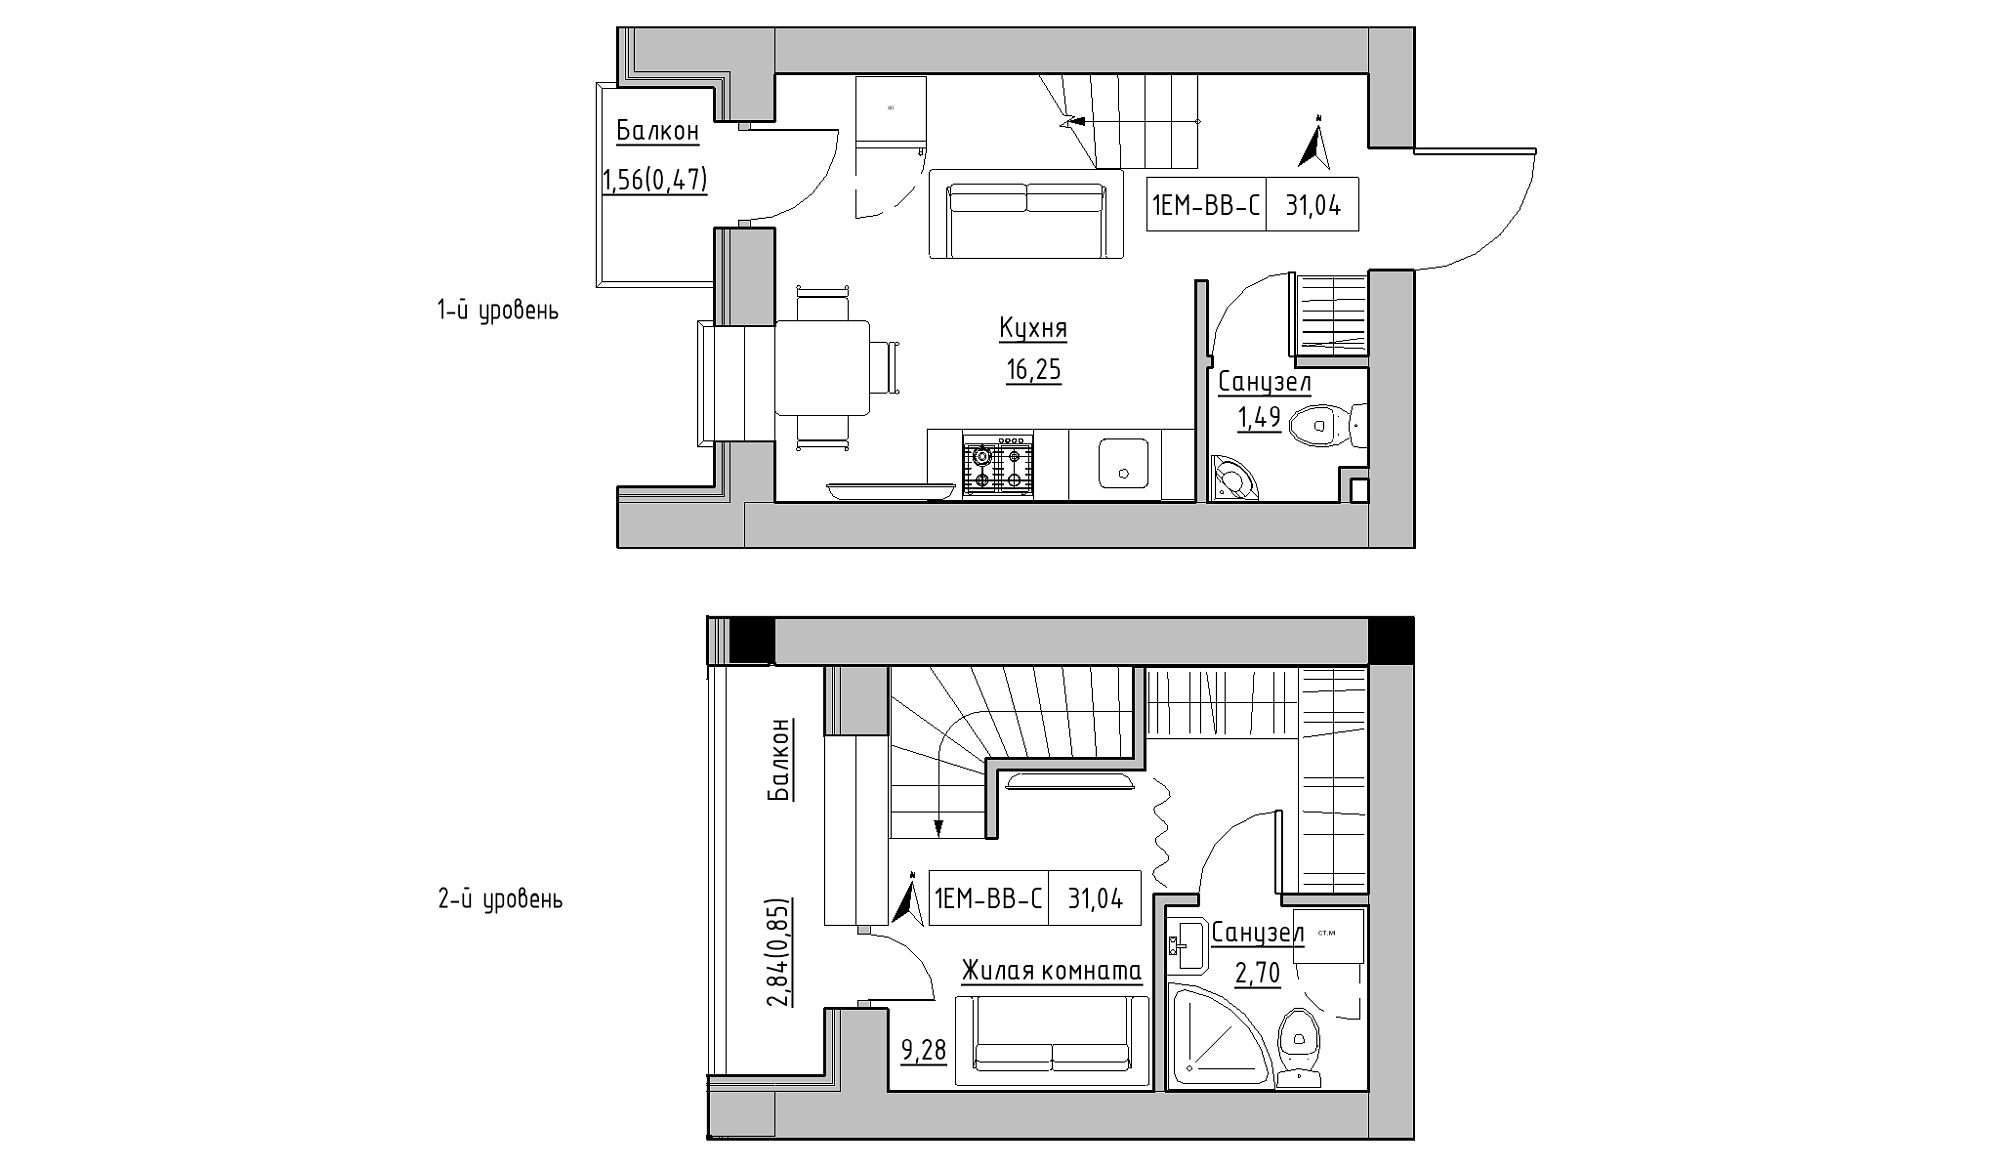 Planning 2-lvl flats area 31.04m2, KS-016-05/0013.